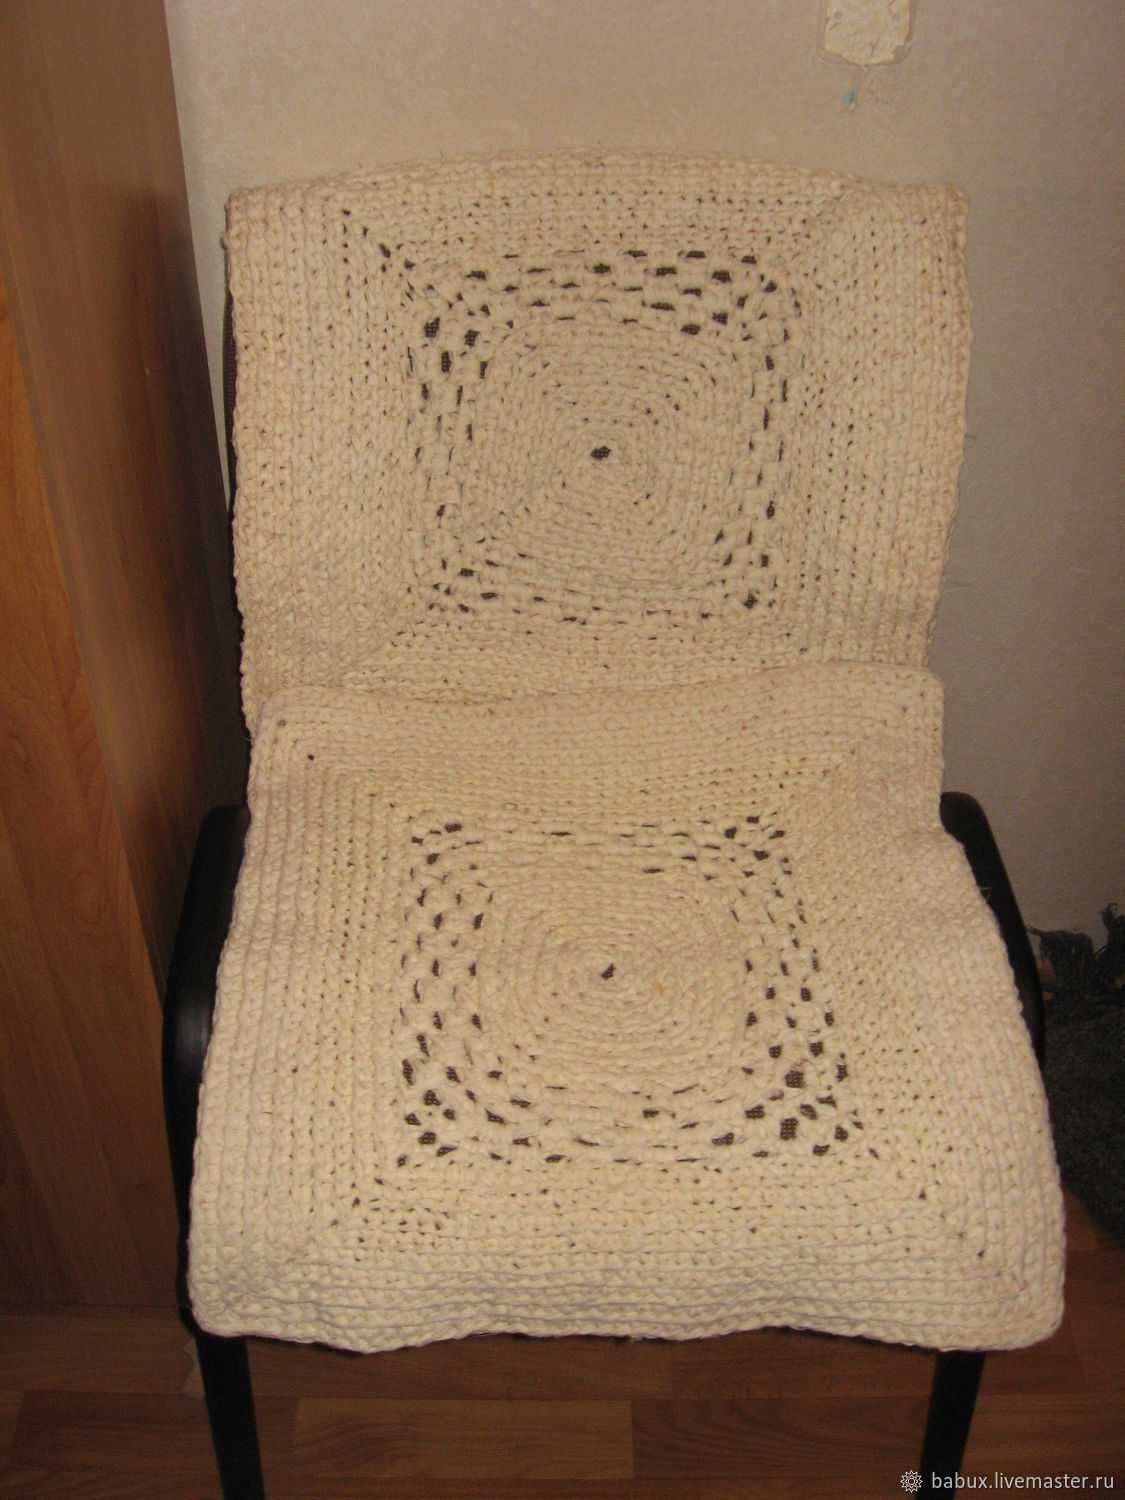 Коврик на стул: вязание крючком для начинающих, идеи, фото